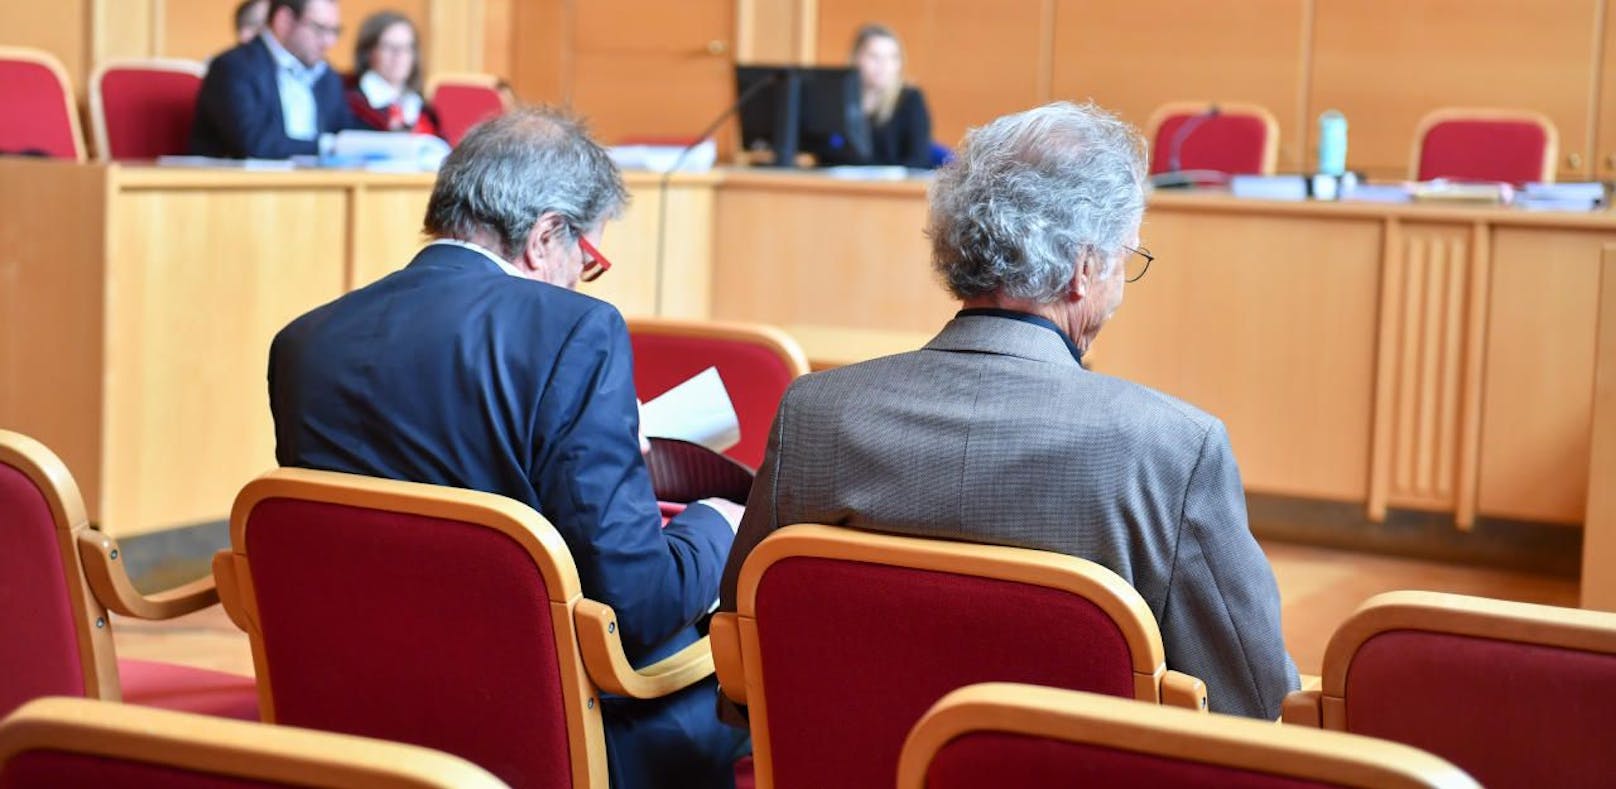 Prozess um gefälschte Staudacher-Bilder in Linz: Brüderpaar vor Gericht